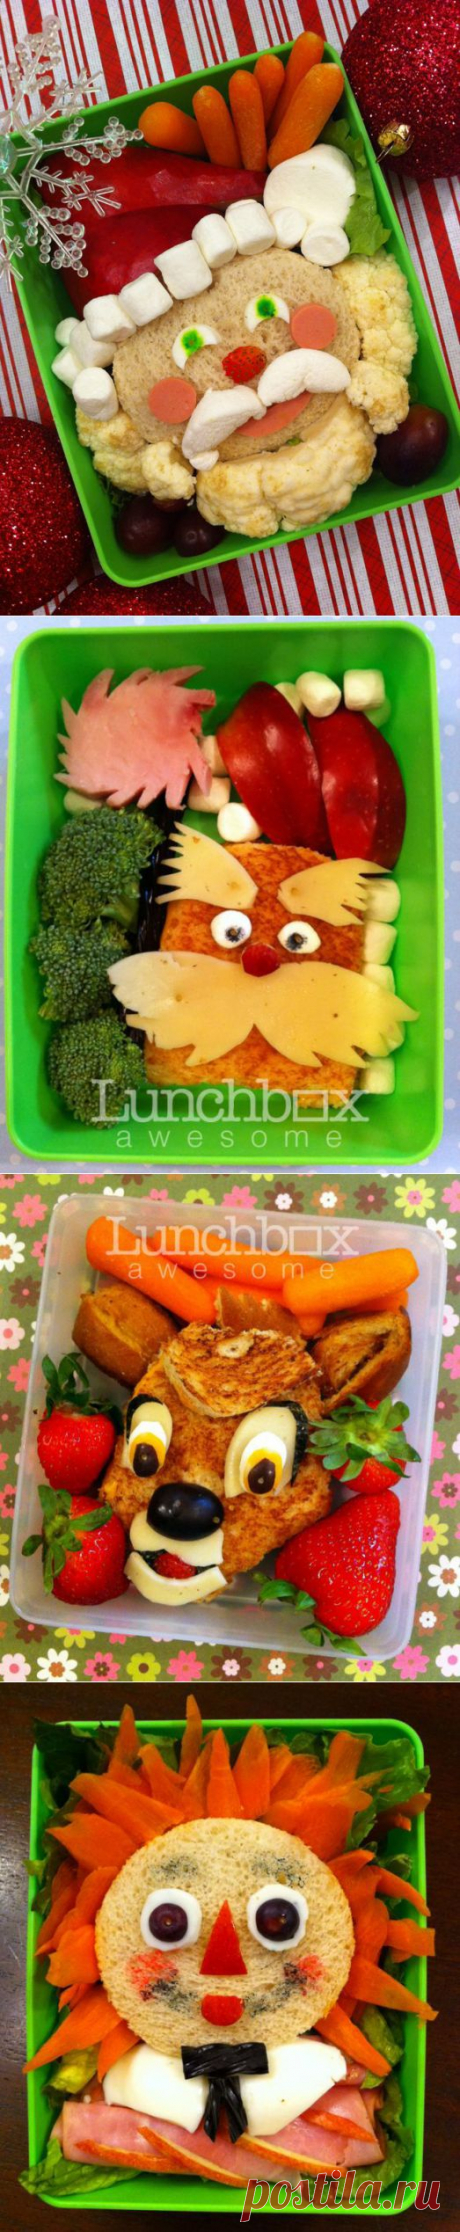 Фотоподборка детских бутербродиков.